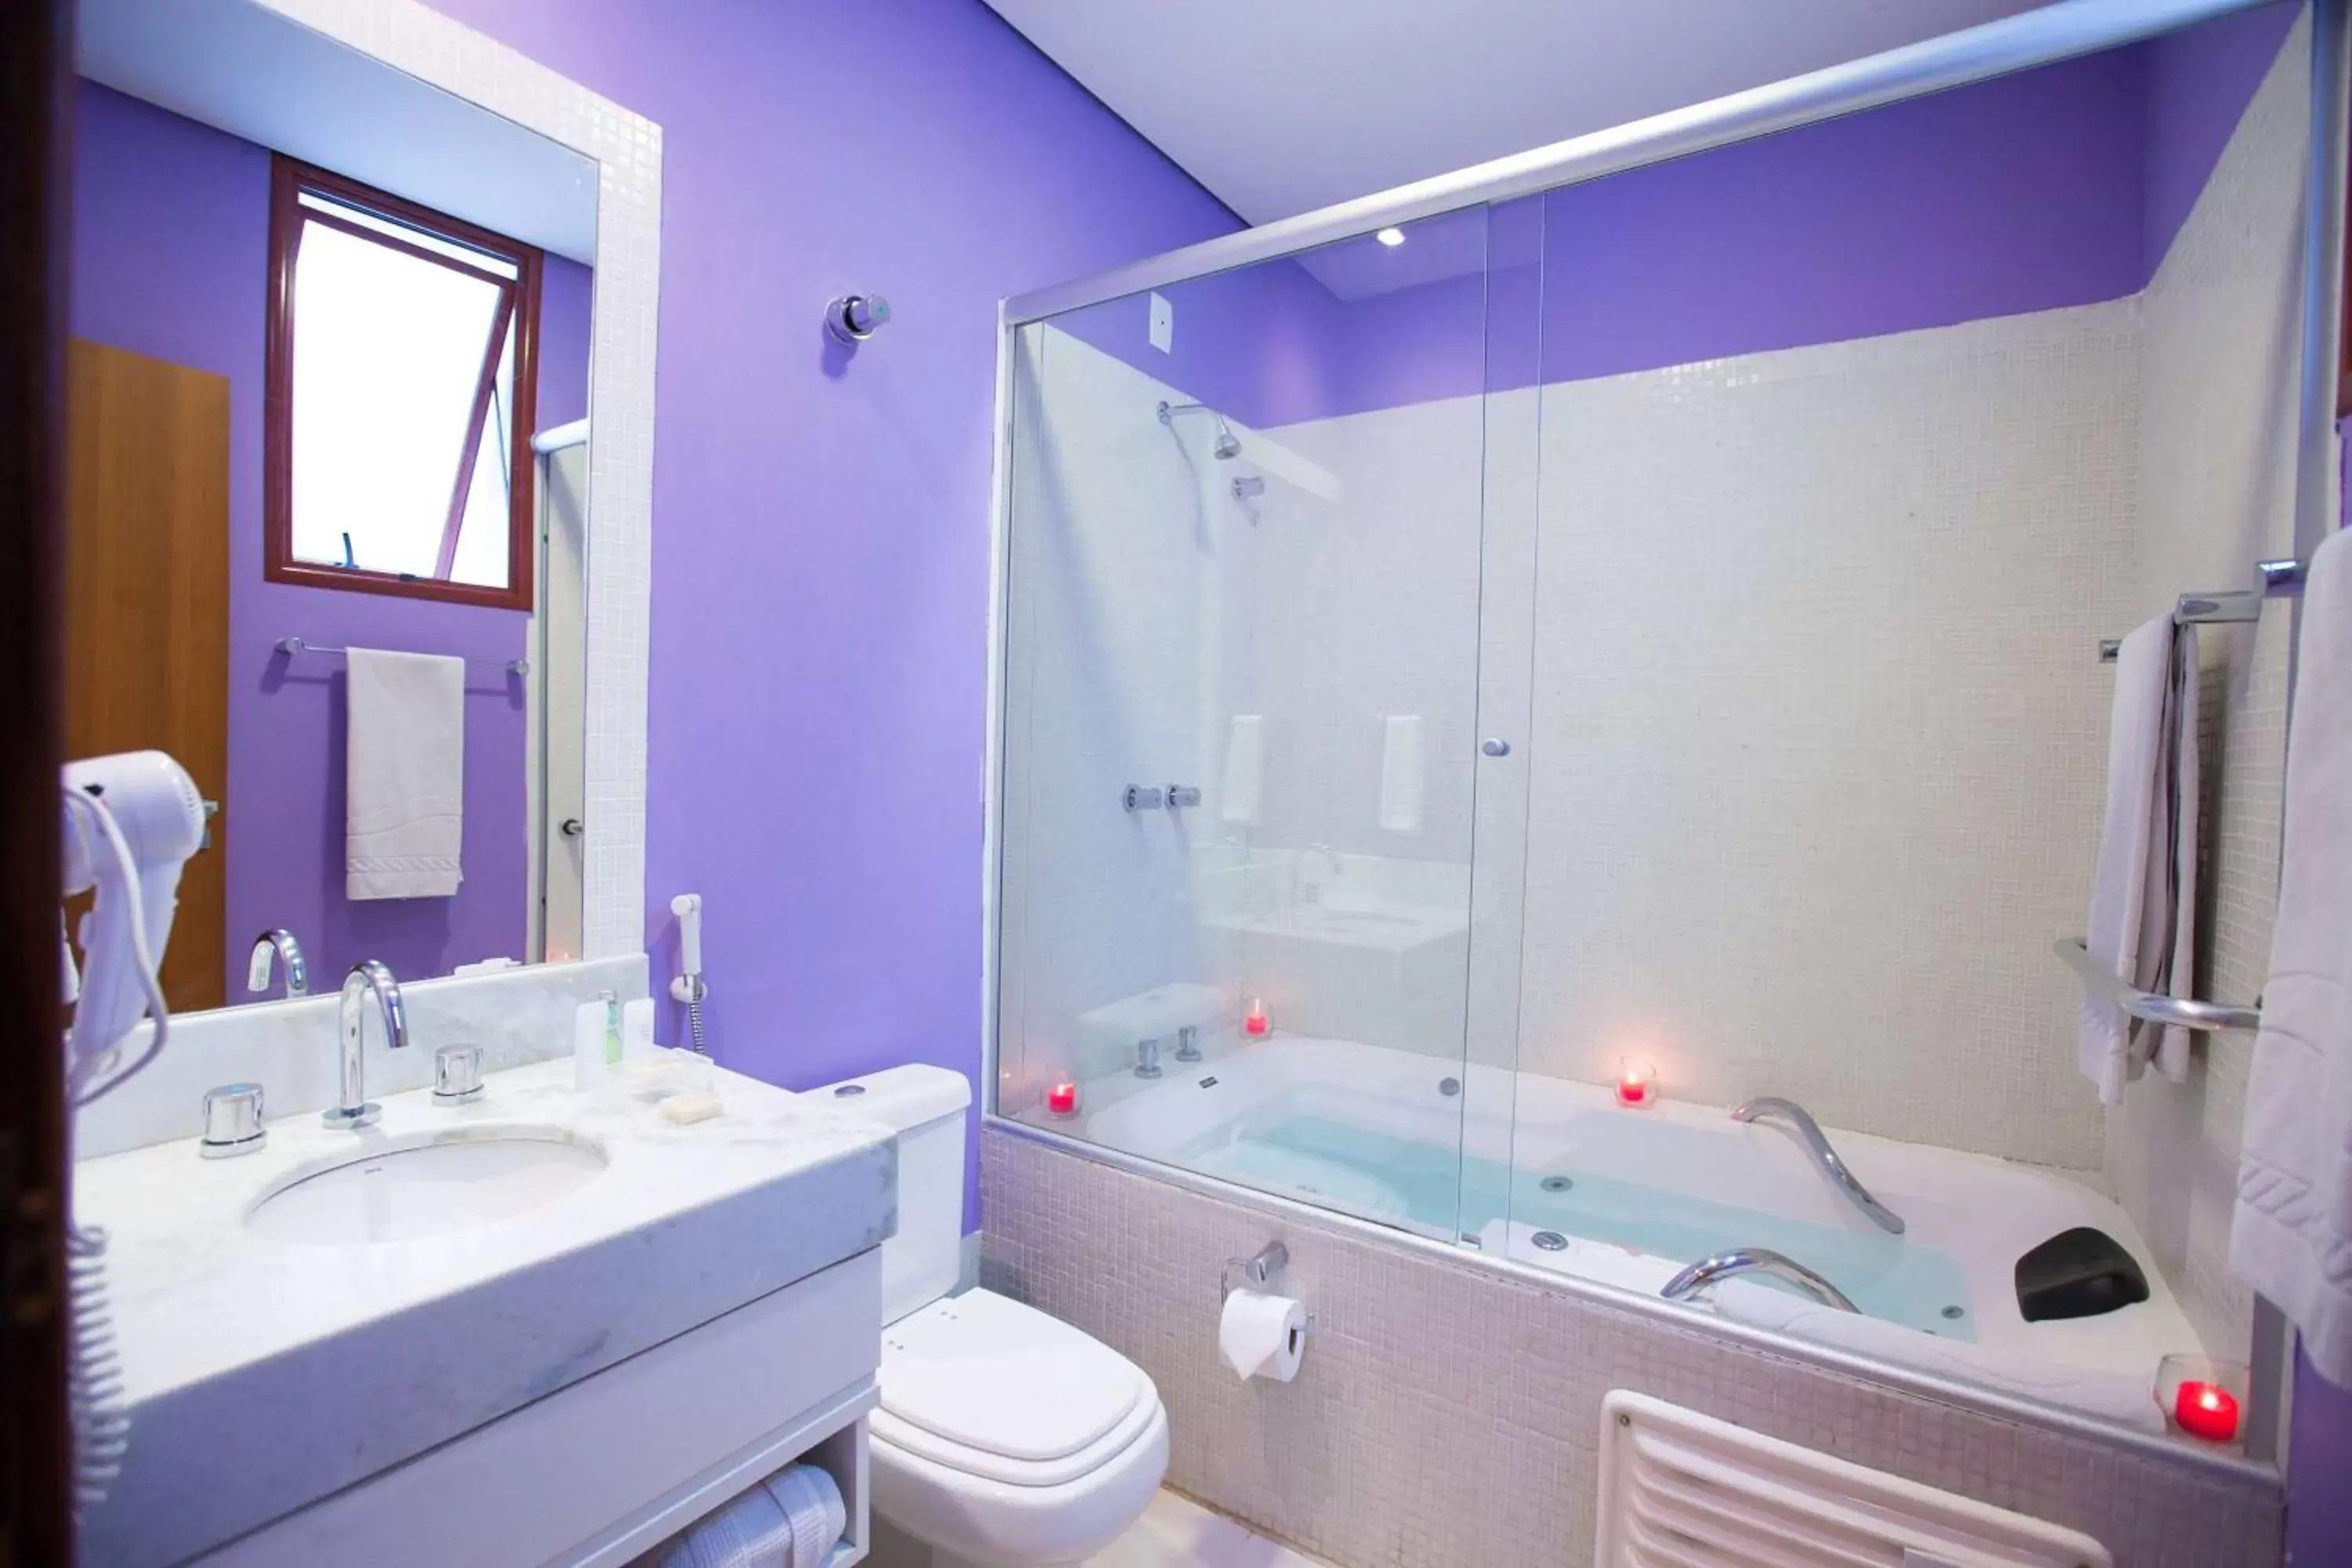 TV and multimedia, Bathroom in Ramada by Wyndham Furnaspark